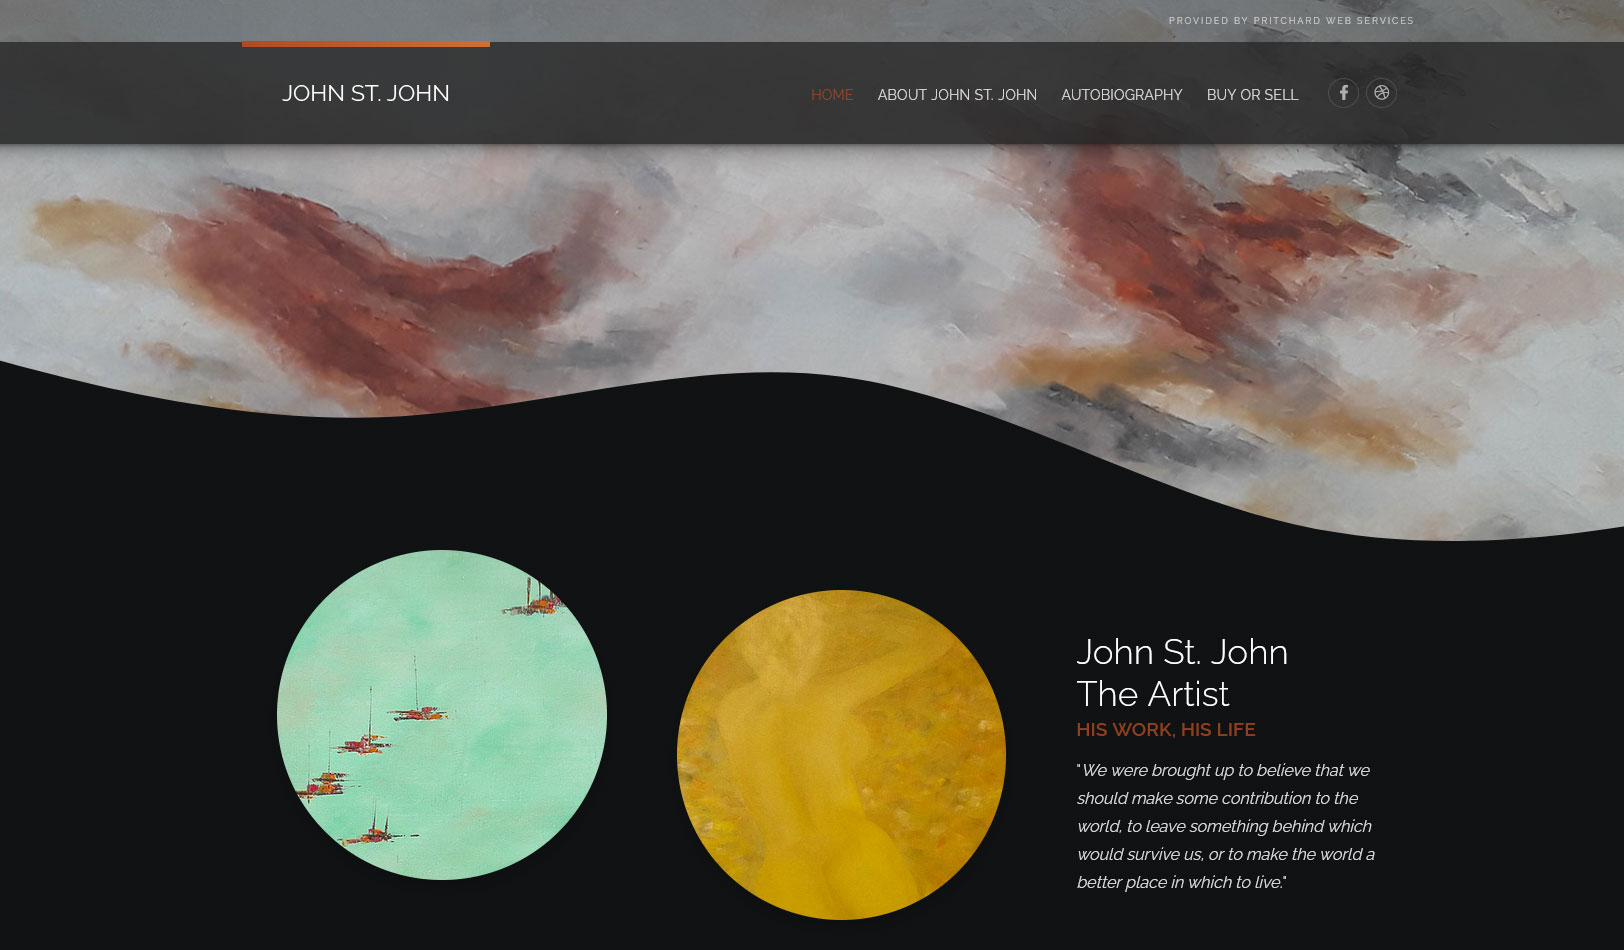 images/Portfolio-images/John-St-John.jpg#joomlaImage://local-images/Portfolio-images/John-St-John.jpg?width=1624&height=950